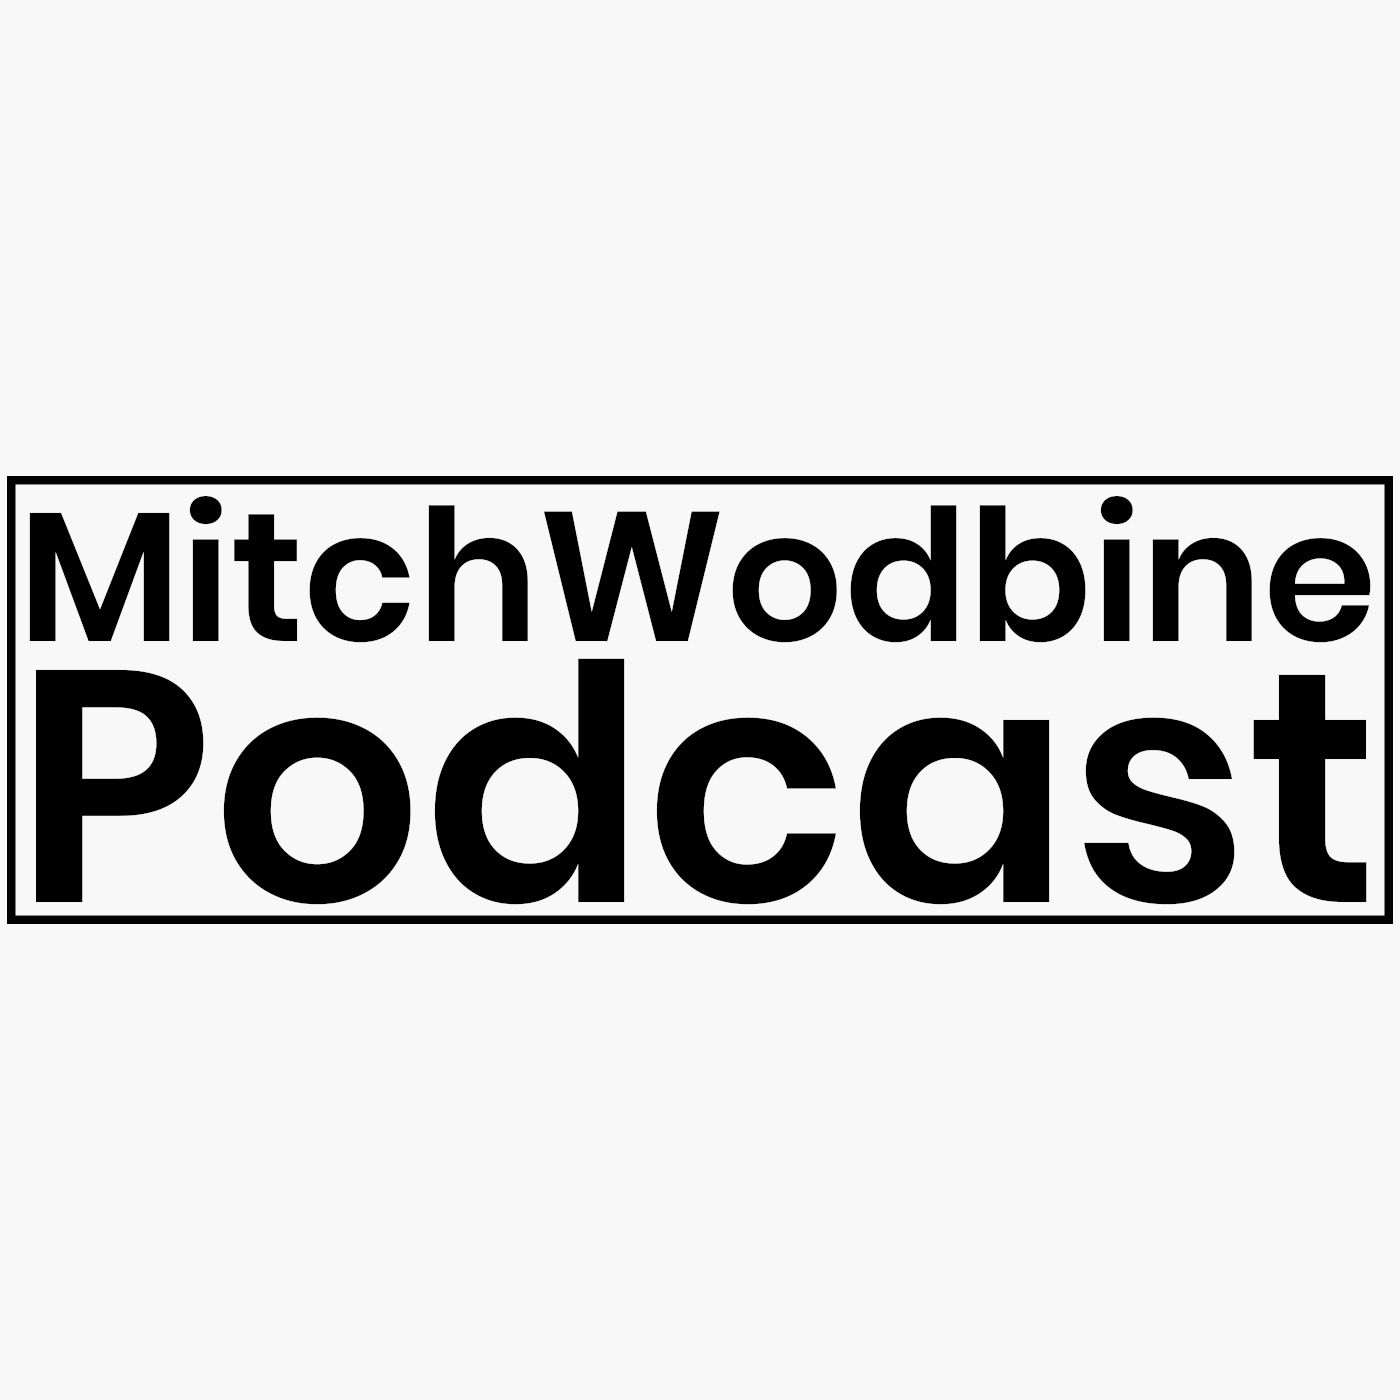 Mitch Woodbine Podcast